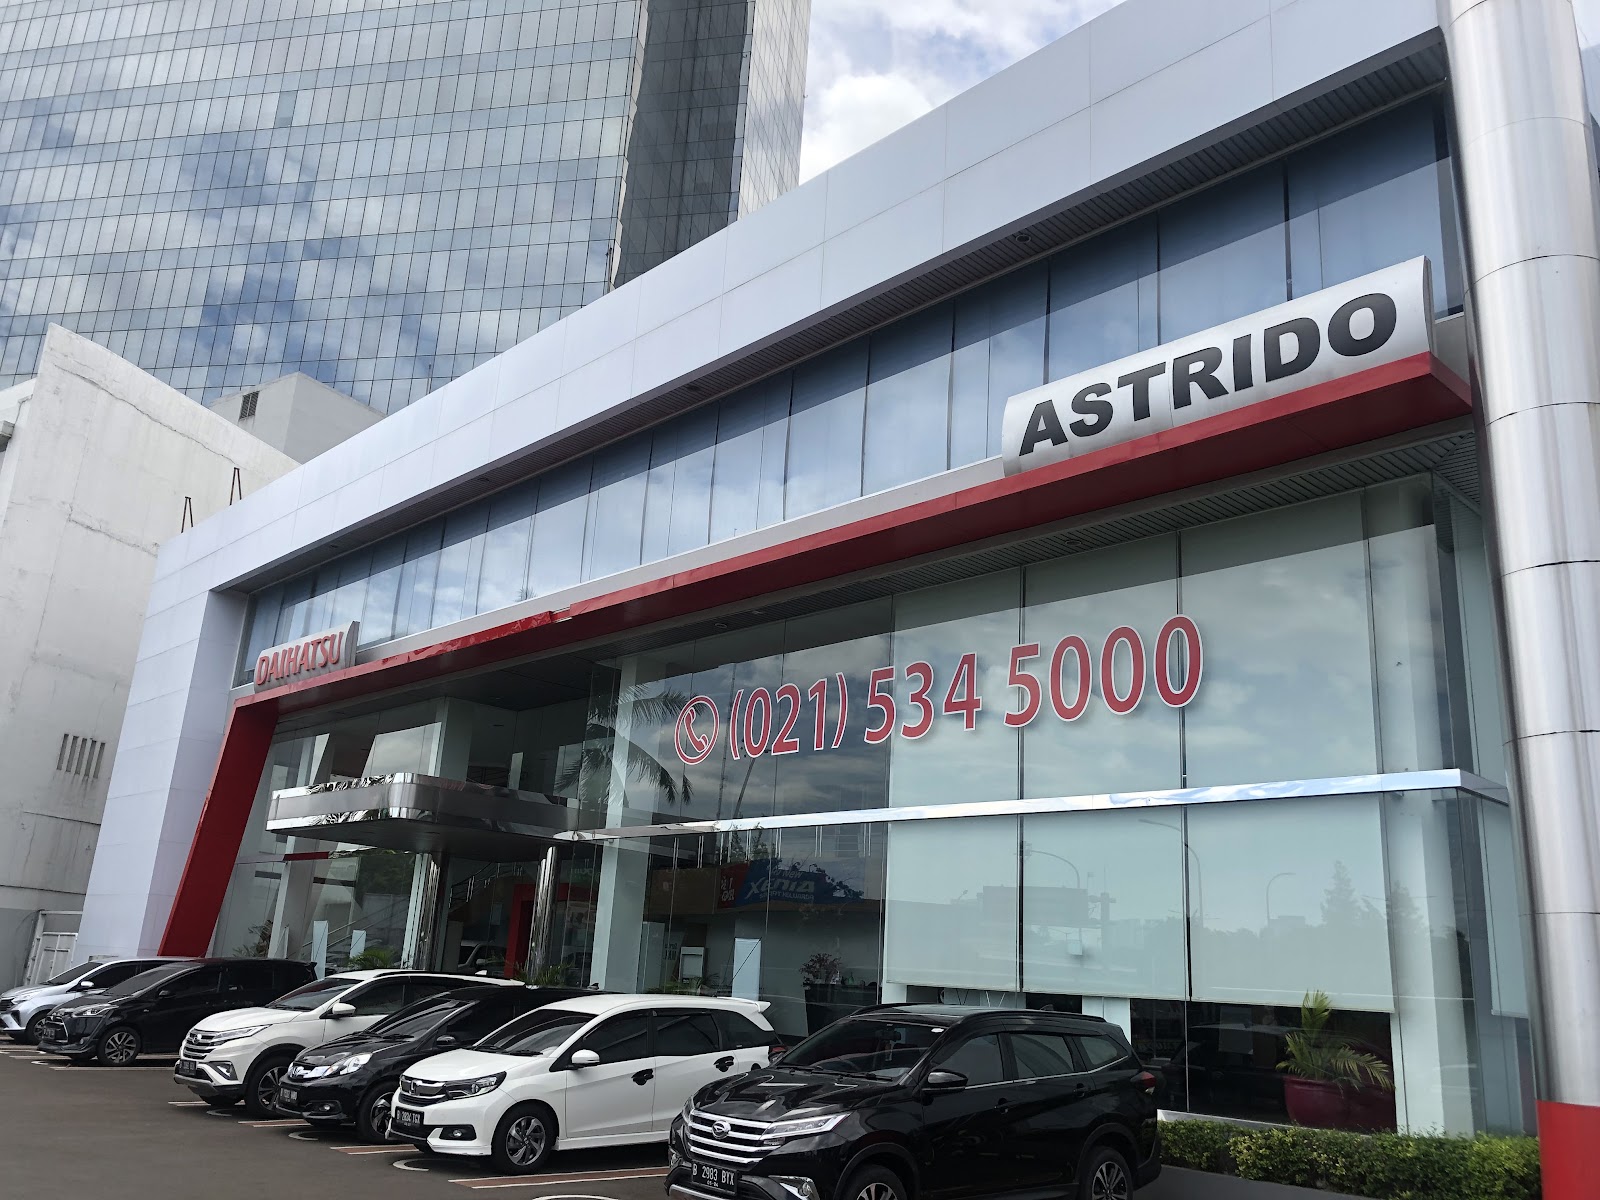 Promo Sales Daihatsu Dealer